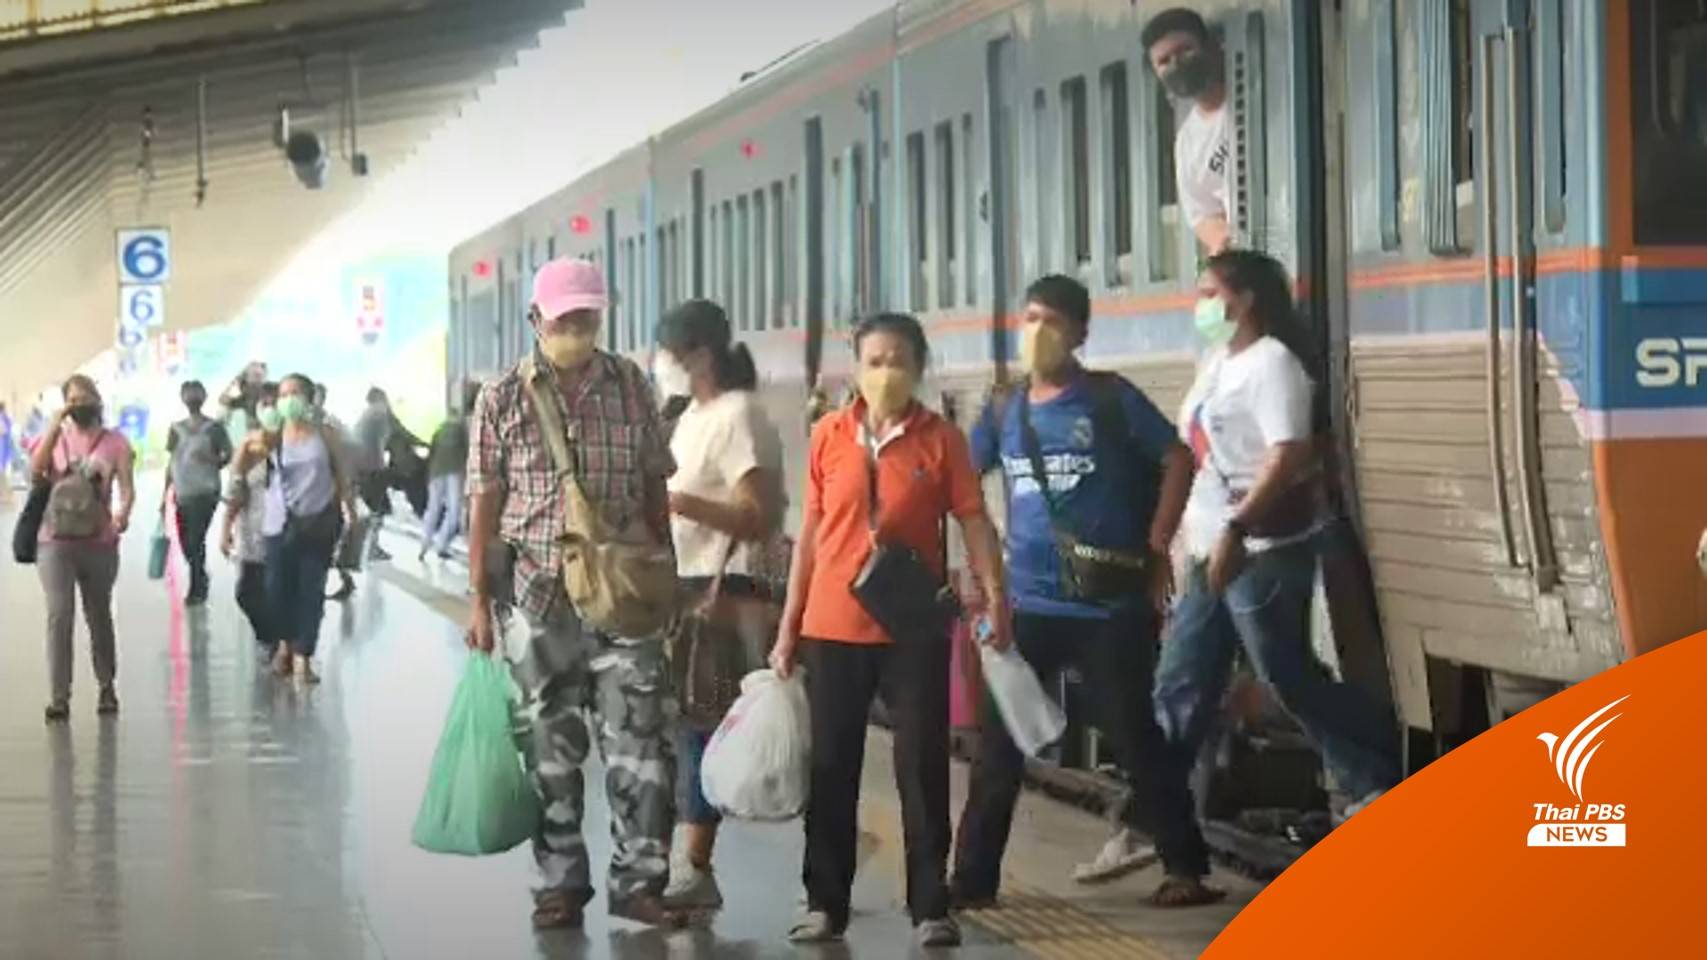 ประชาชนใช้บริการรถไฟเดินทางกลับกรุงเทพฯ หลังวันหยุดยาว